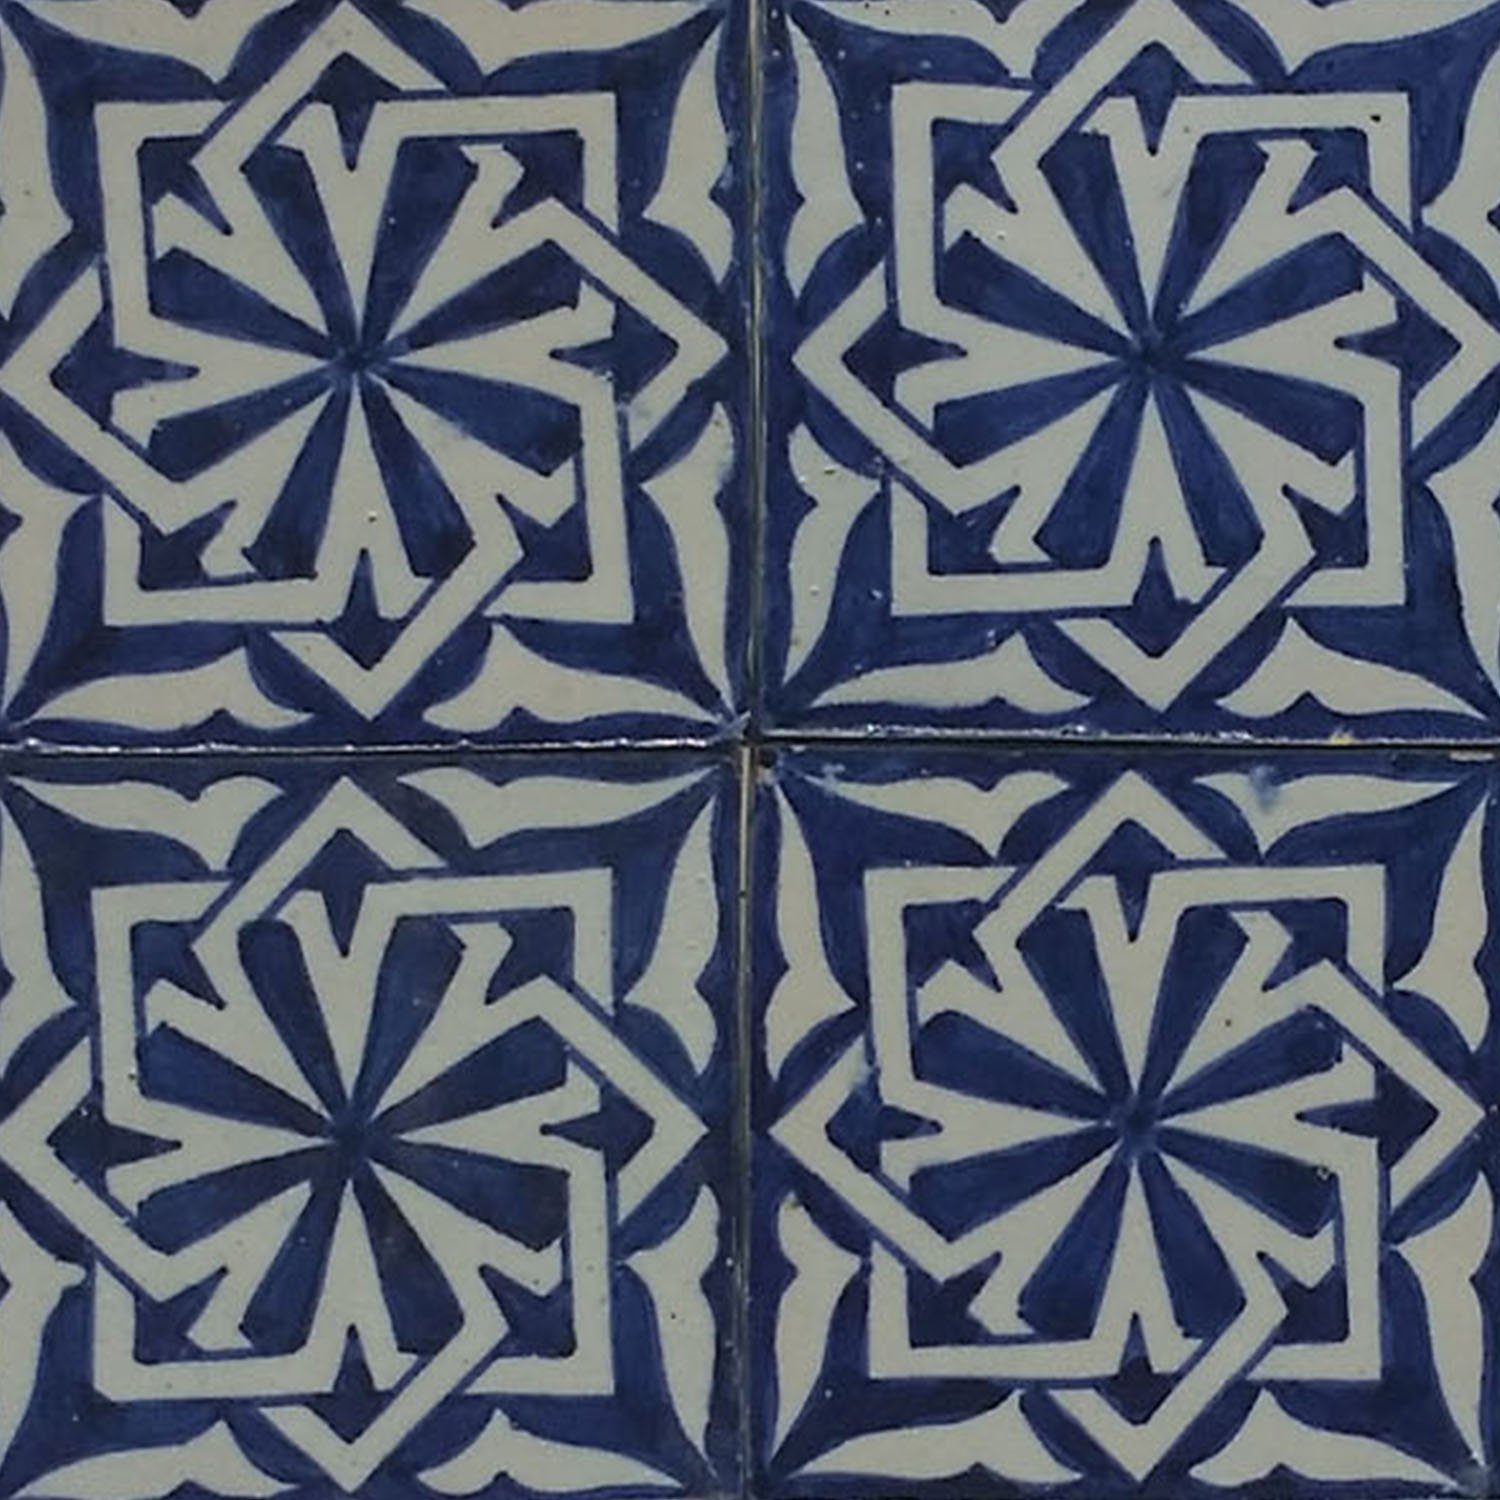 Wandfliese Fliese Badezimmer, handbemalte Marokkanische Wandfliese Moro Blau weiß aus Casa schöne Küche blau 10x10 Dusche Hala HBF8025, orientalische Marokko für cm Weiß Kunsthandwerk Keramikfliese